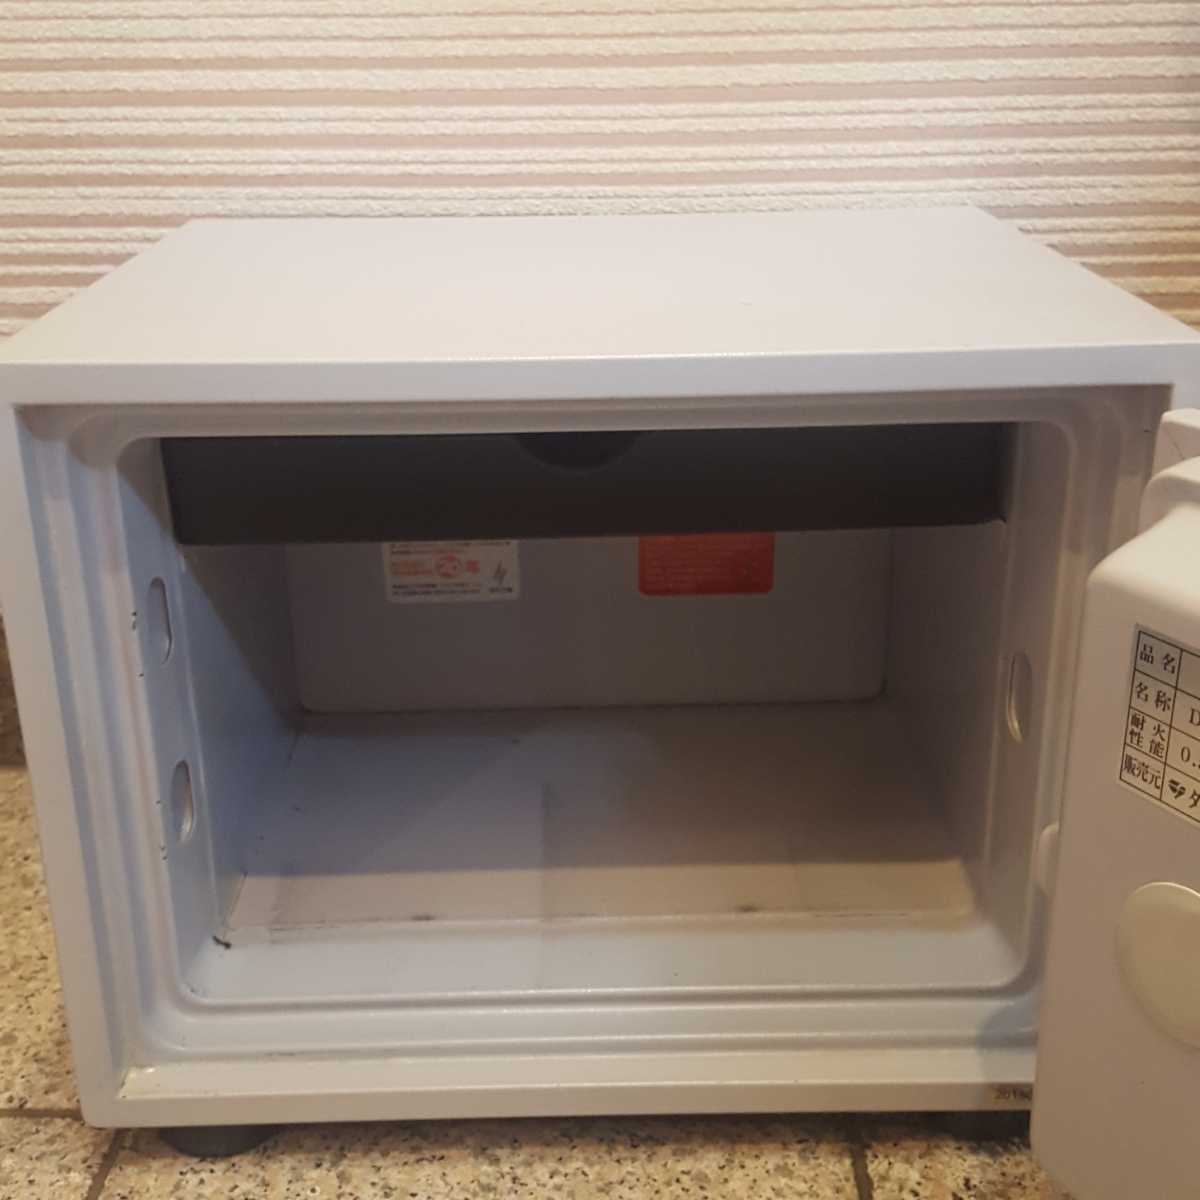  несгораемый сейф H30-1 2015 год производства diamond safe